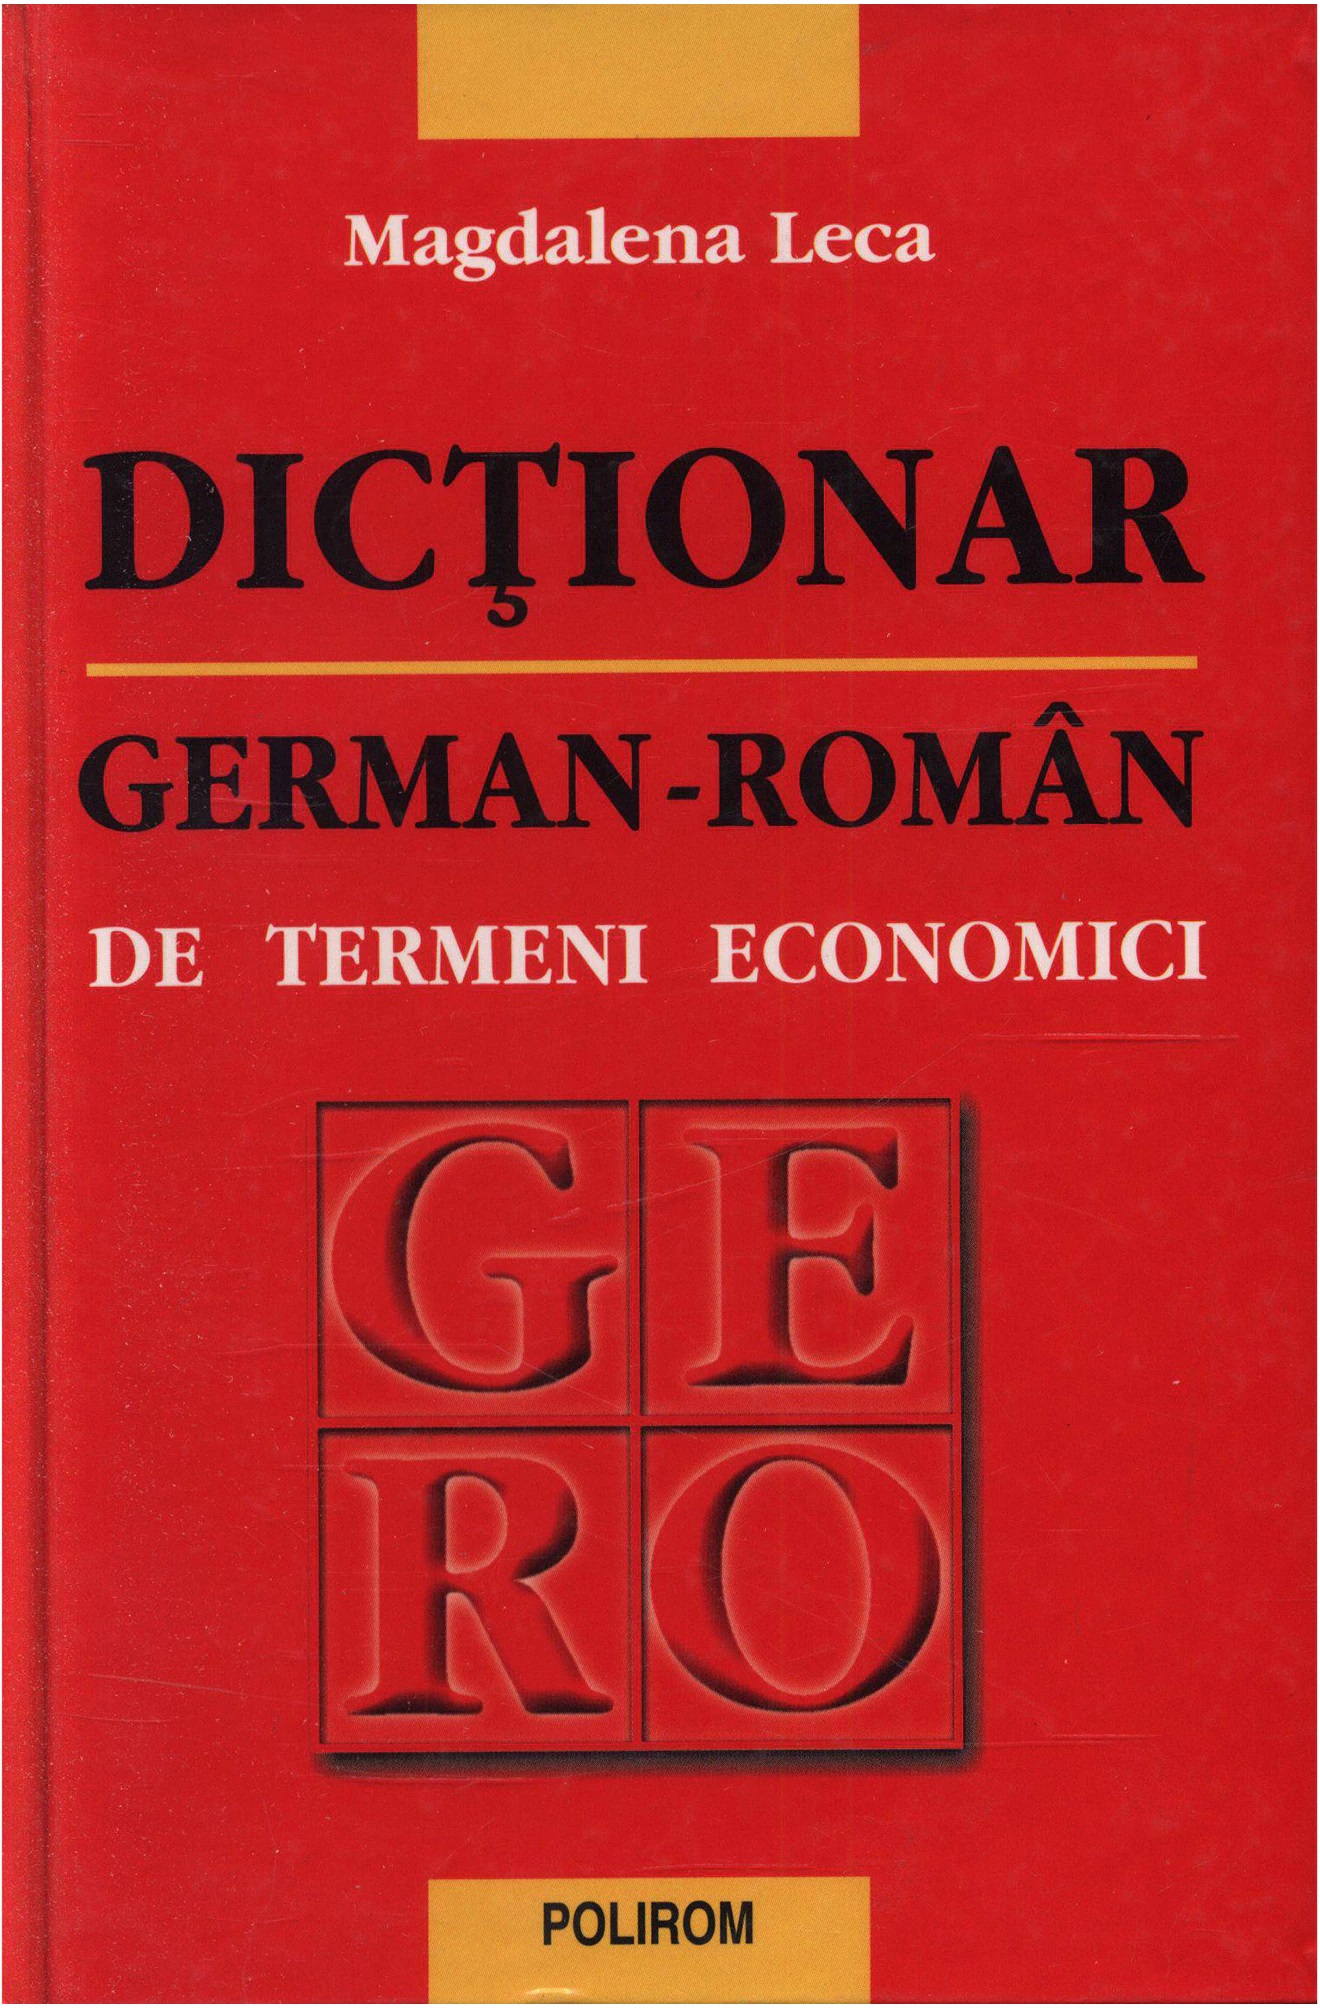 Coperta cărții: Dictionar economic german-roman - lonnieyoungblood.com